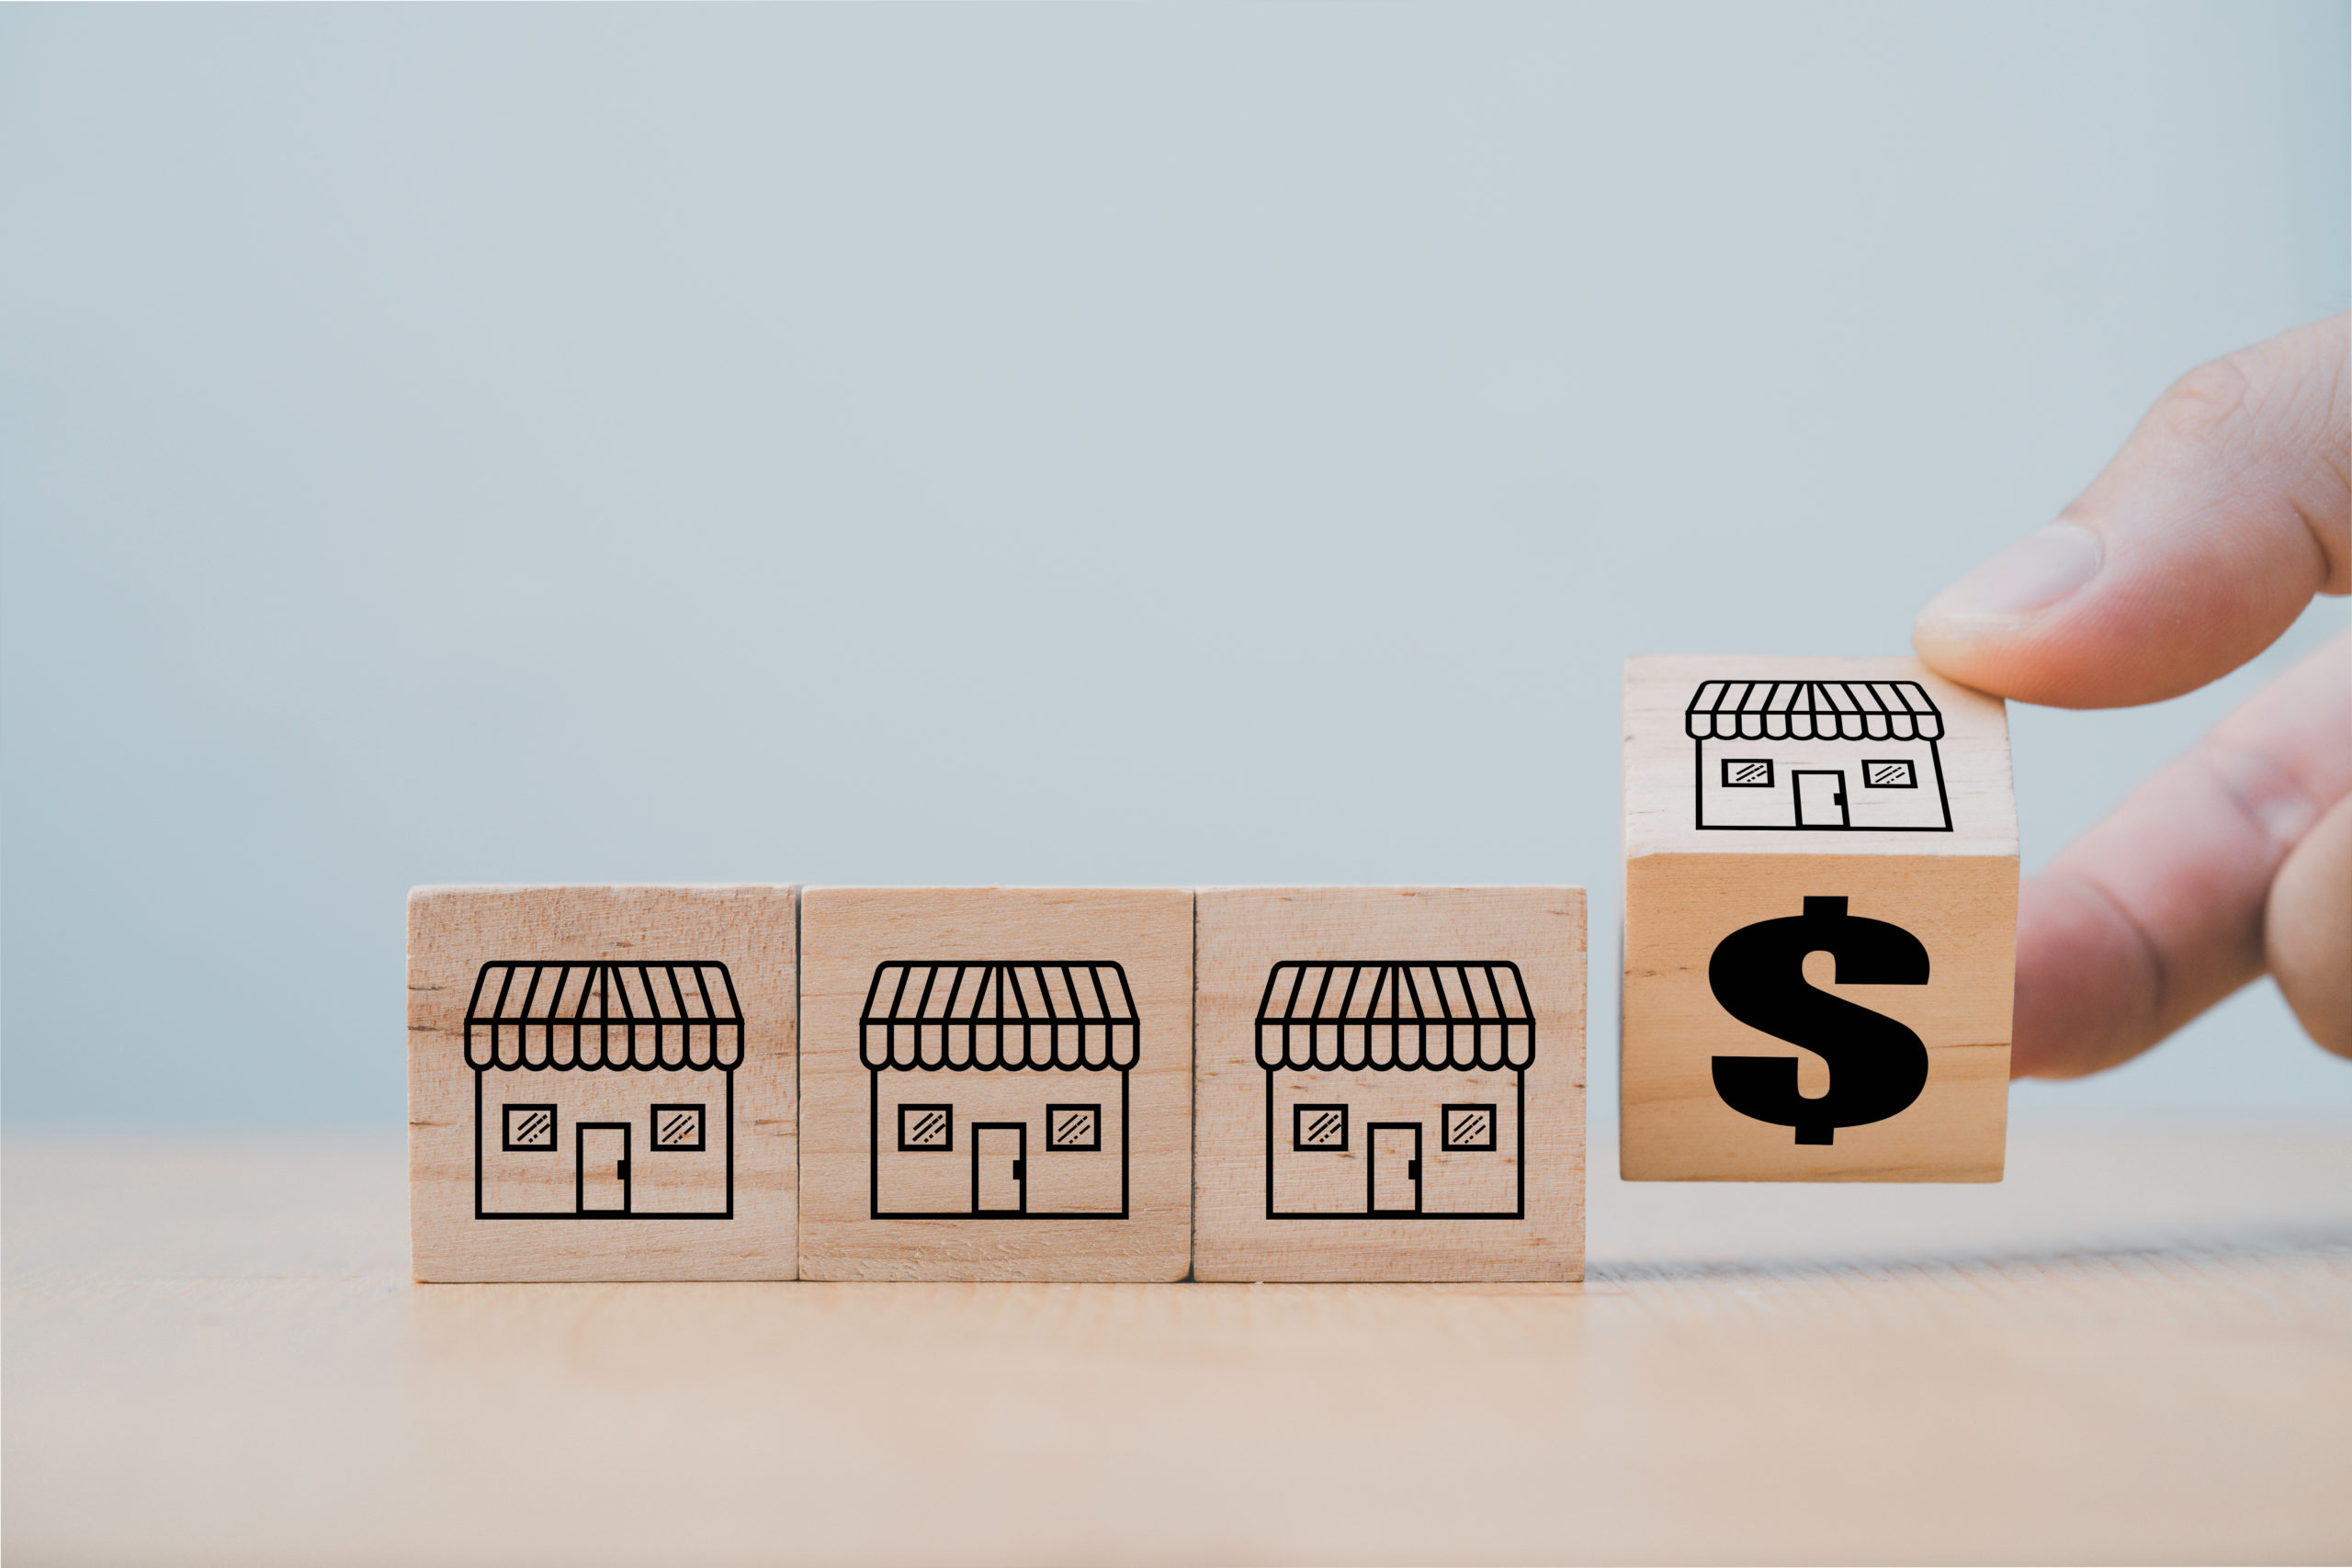 Imagem de quatro cubos de madeira com desenhos de empresas, sendo que o último está sendo "virado" para uma face que representa dinheiro